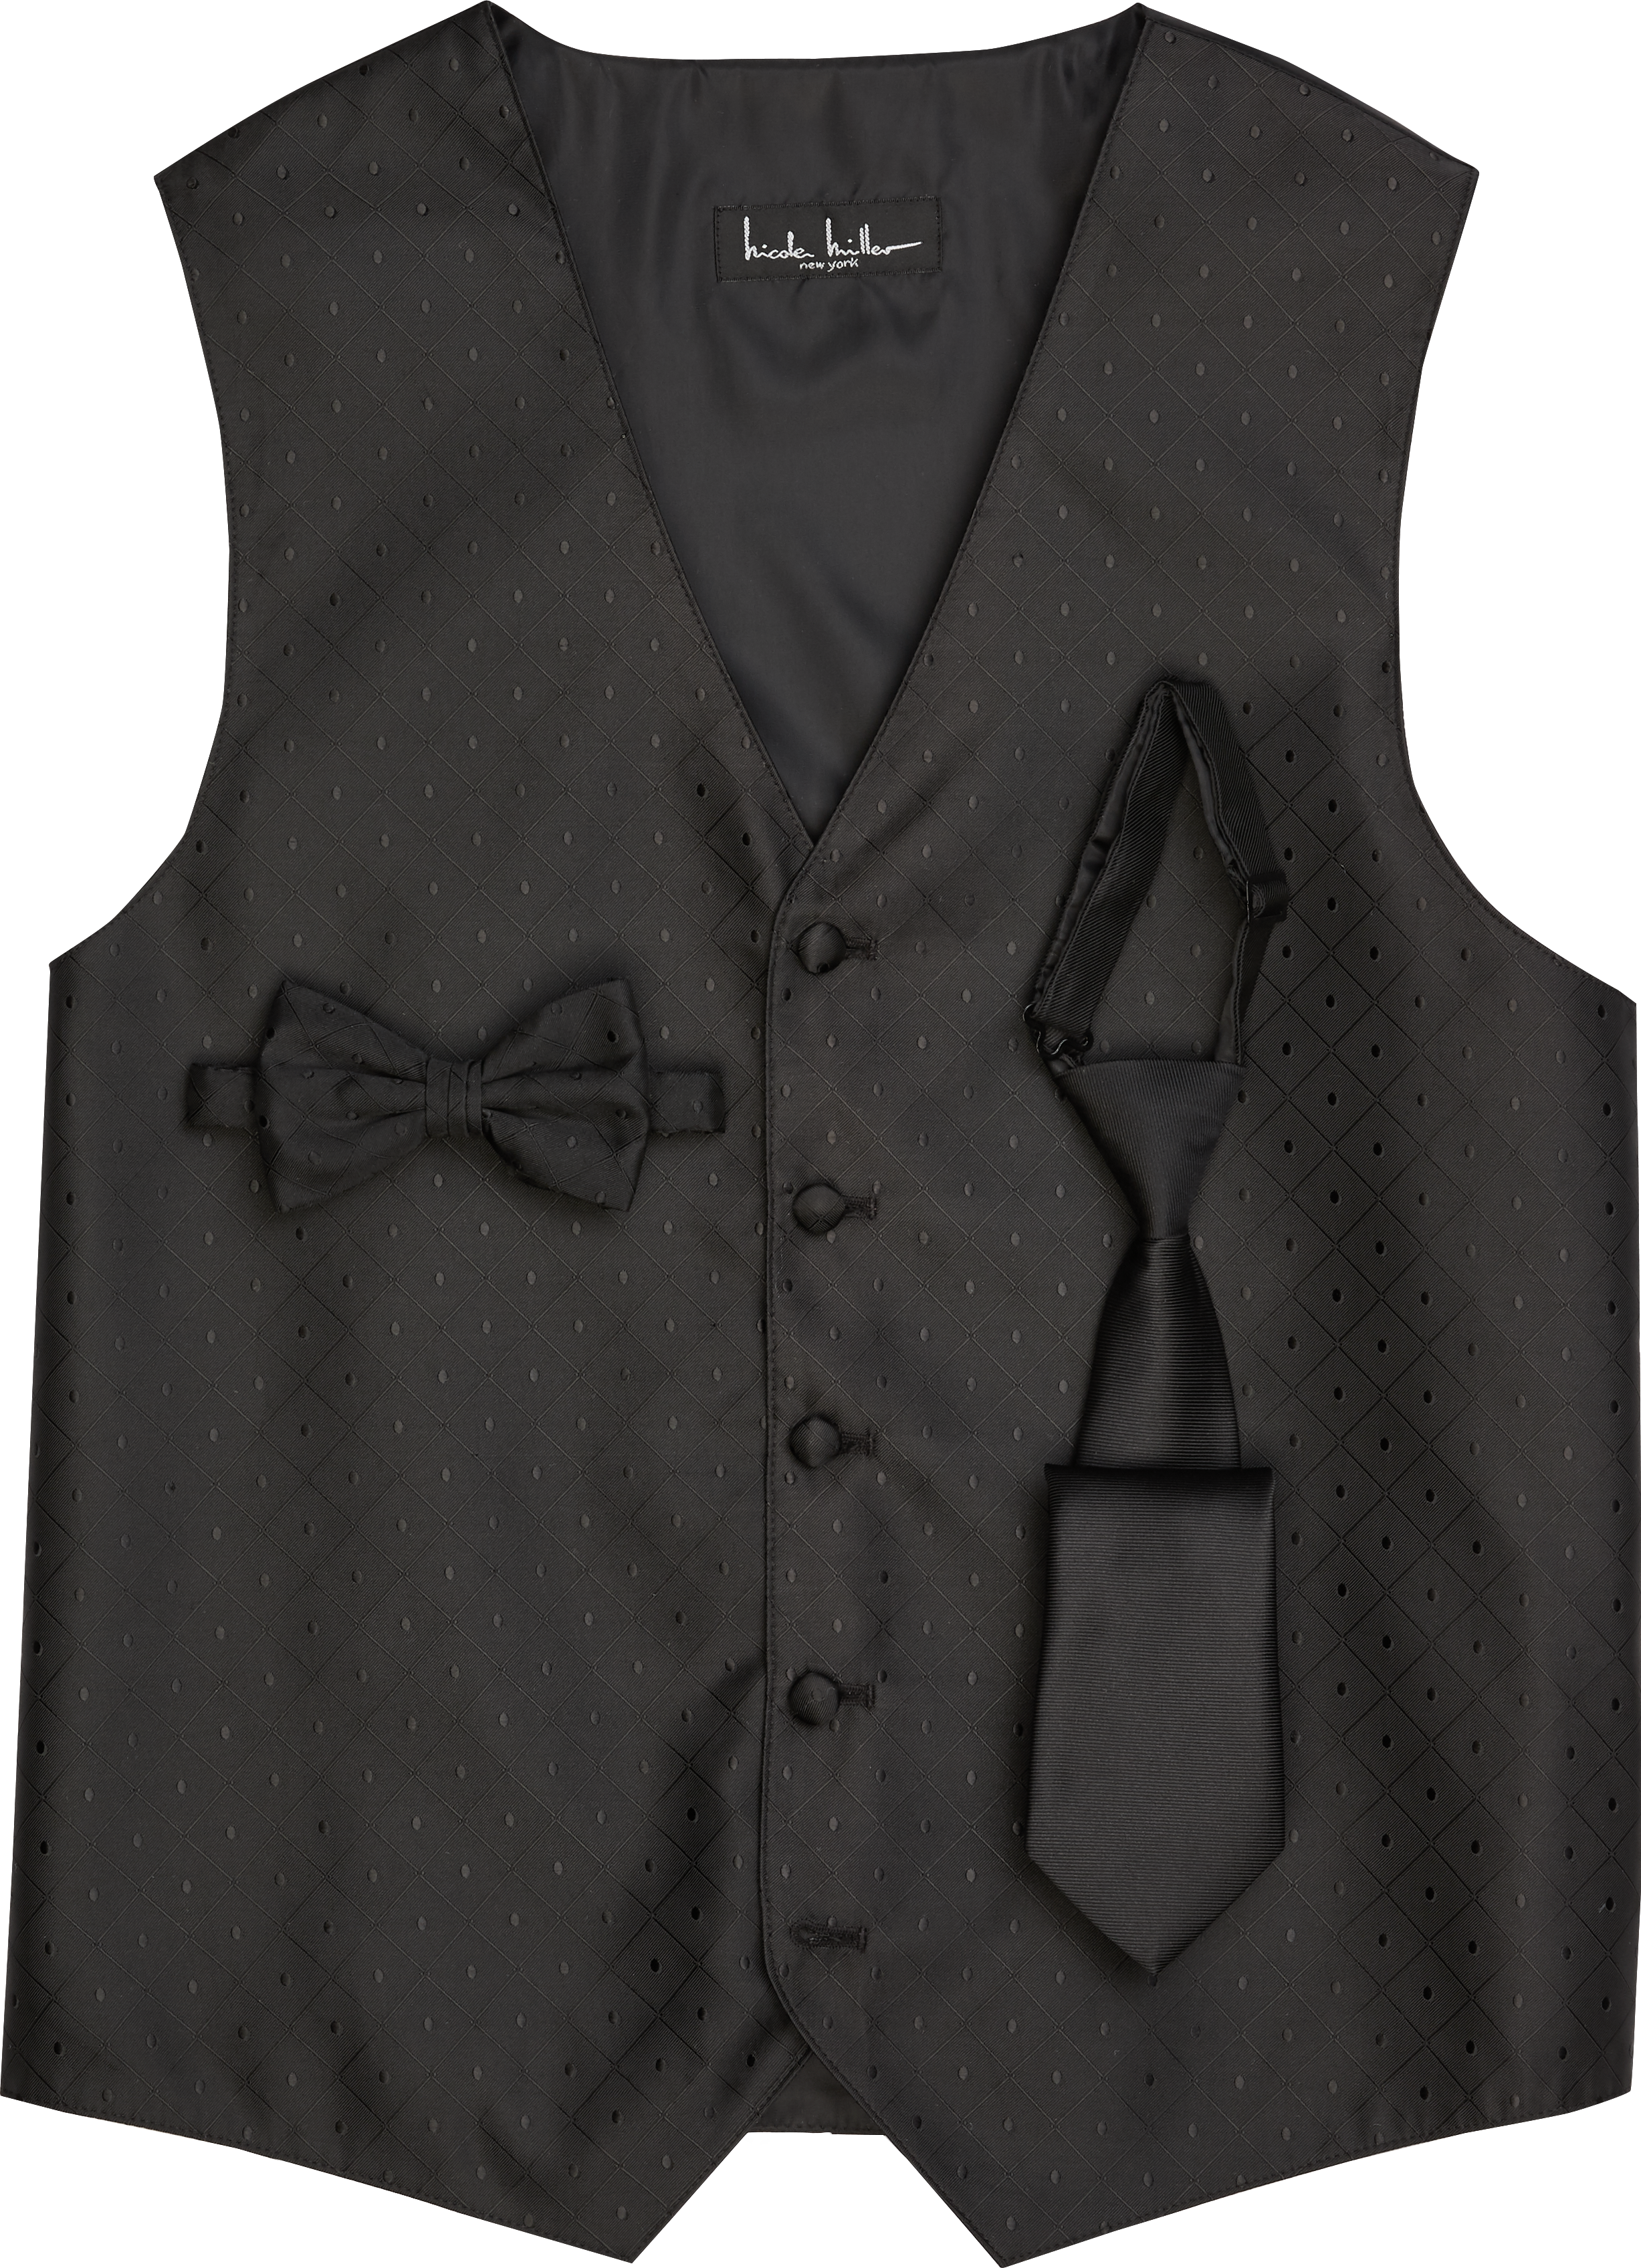 Bella Luna Black Vest Tux & Suit Rentals | Men's Wearhouse